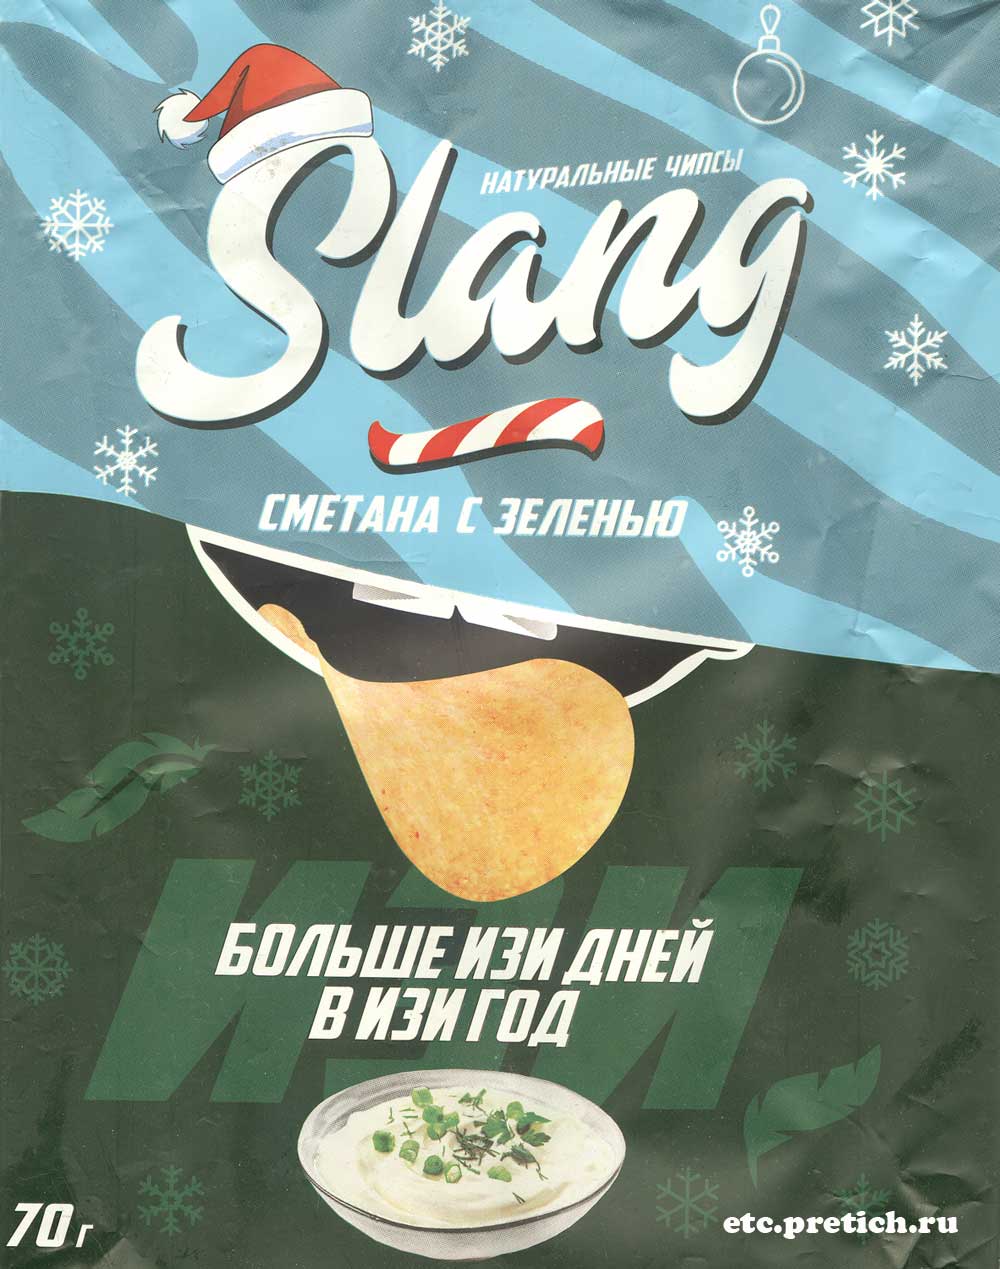 Чипсы Slang Сметана с зеленью отзыв какие это чипсы из Казахстана